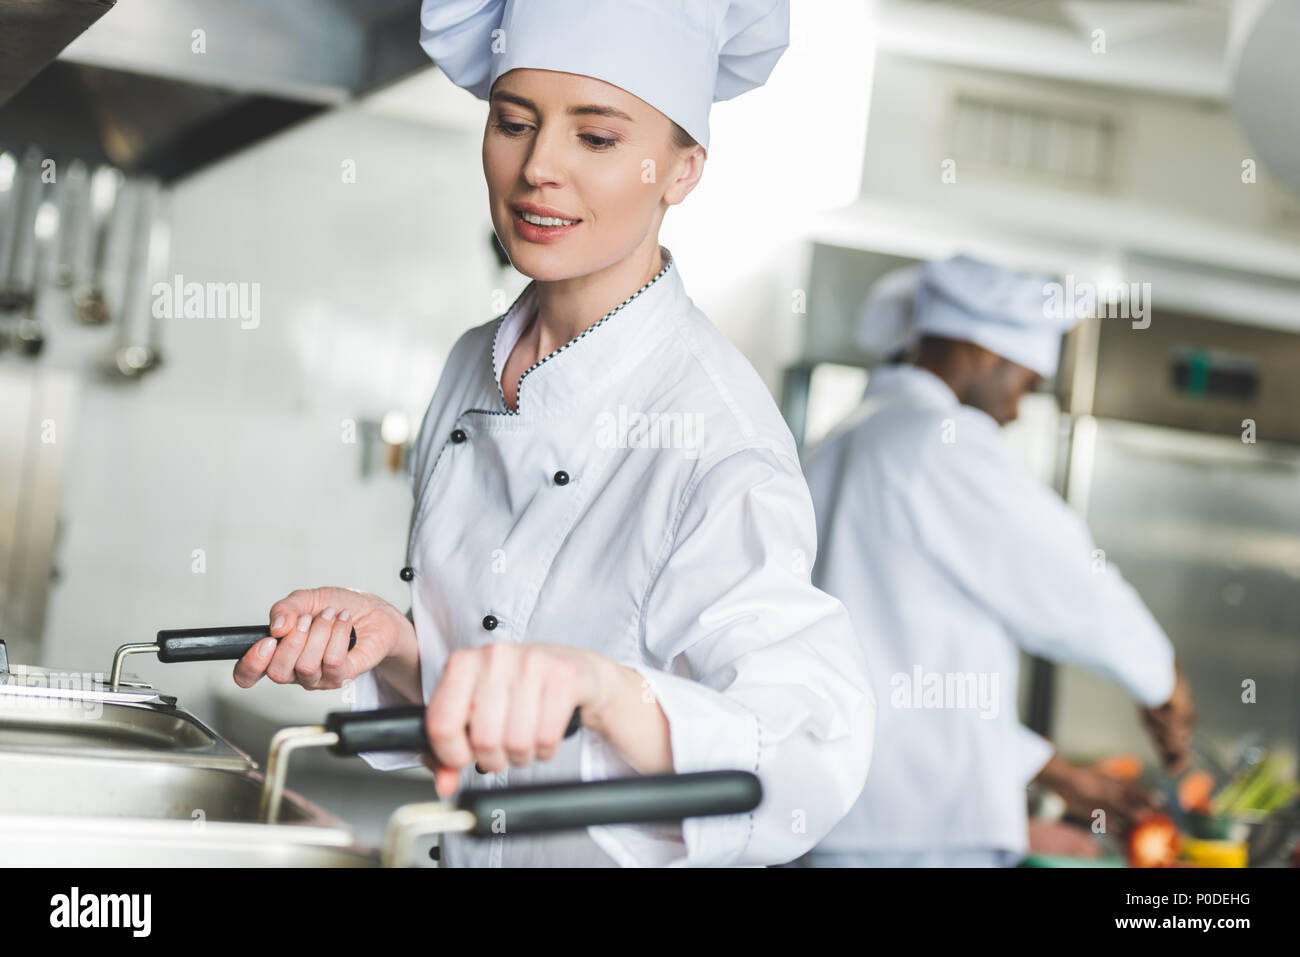 Attraktive Koch Frittieren in Öl bei Restaurant Küche Stockfoto